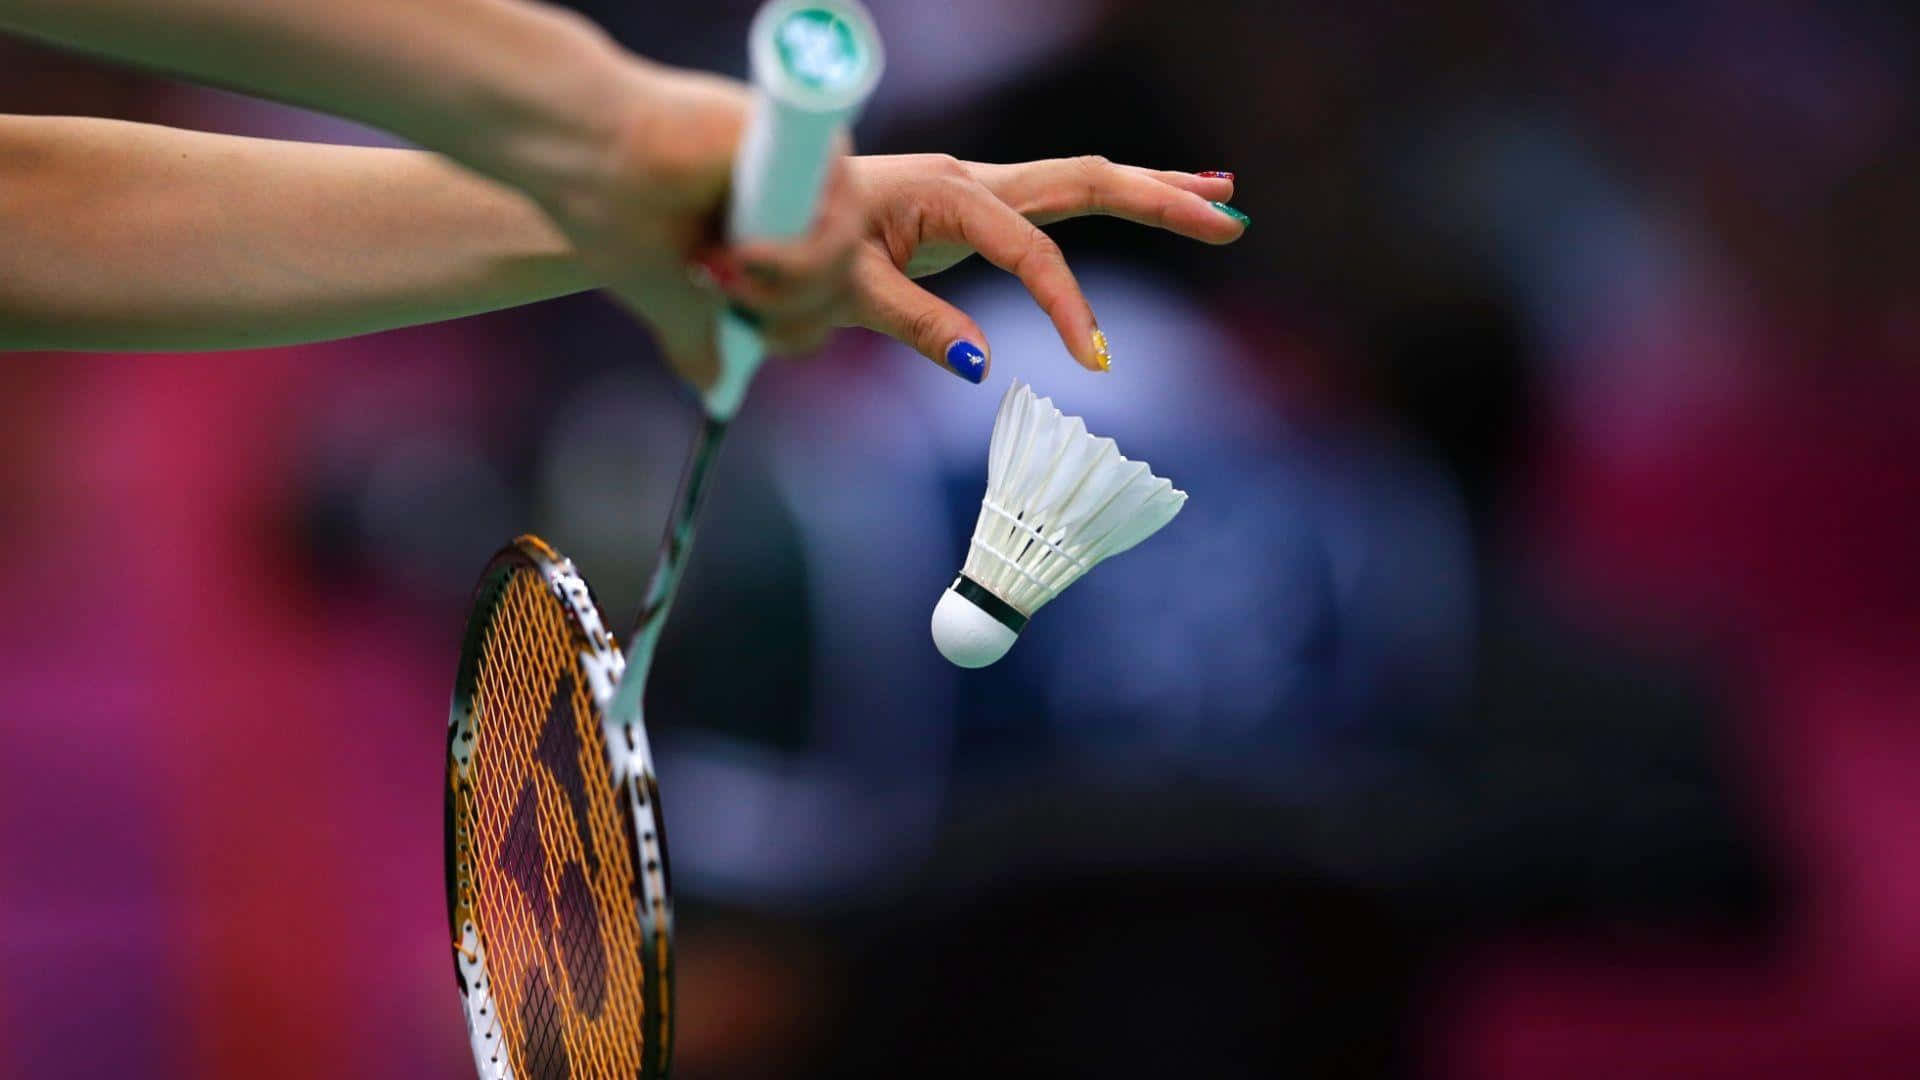 Unmomento Di Concentrazione Per Un Giocatore Di Badminton.